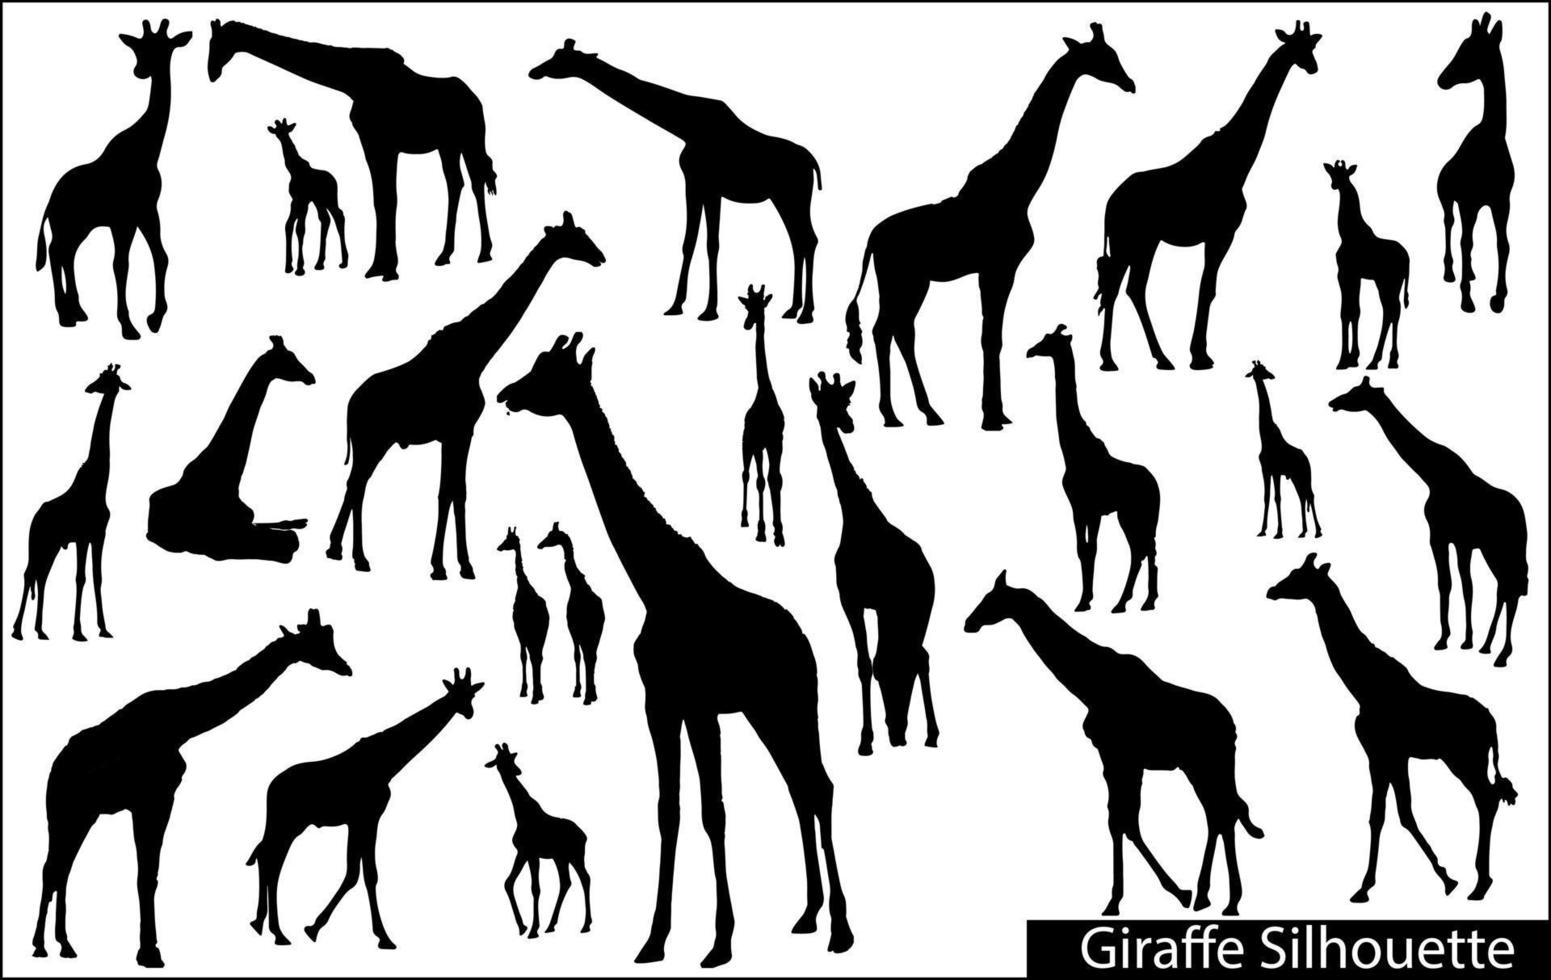 reeks van vector silhouetten van giraffen